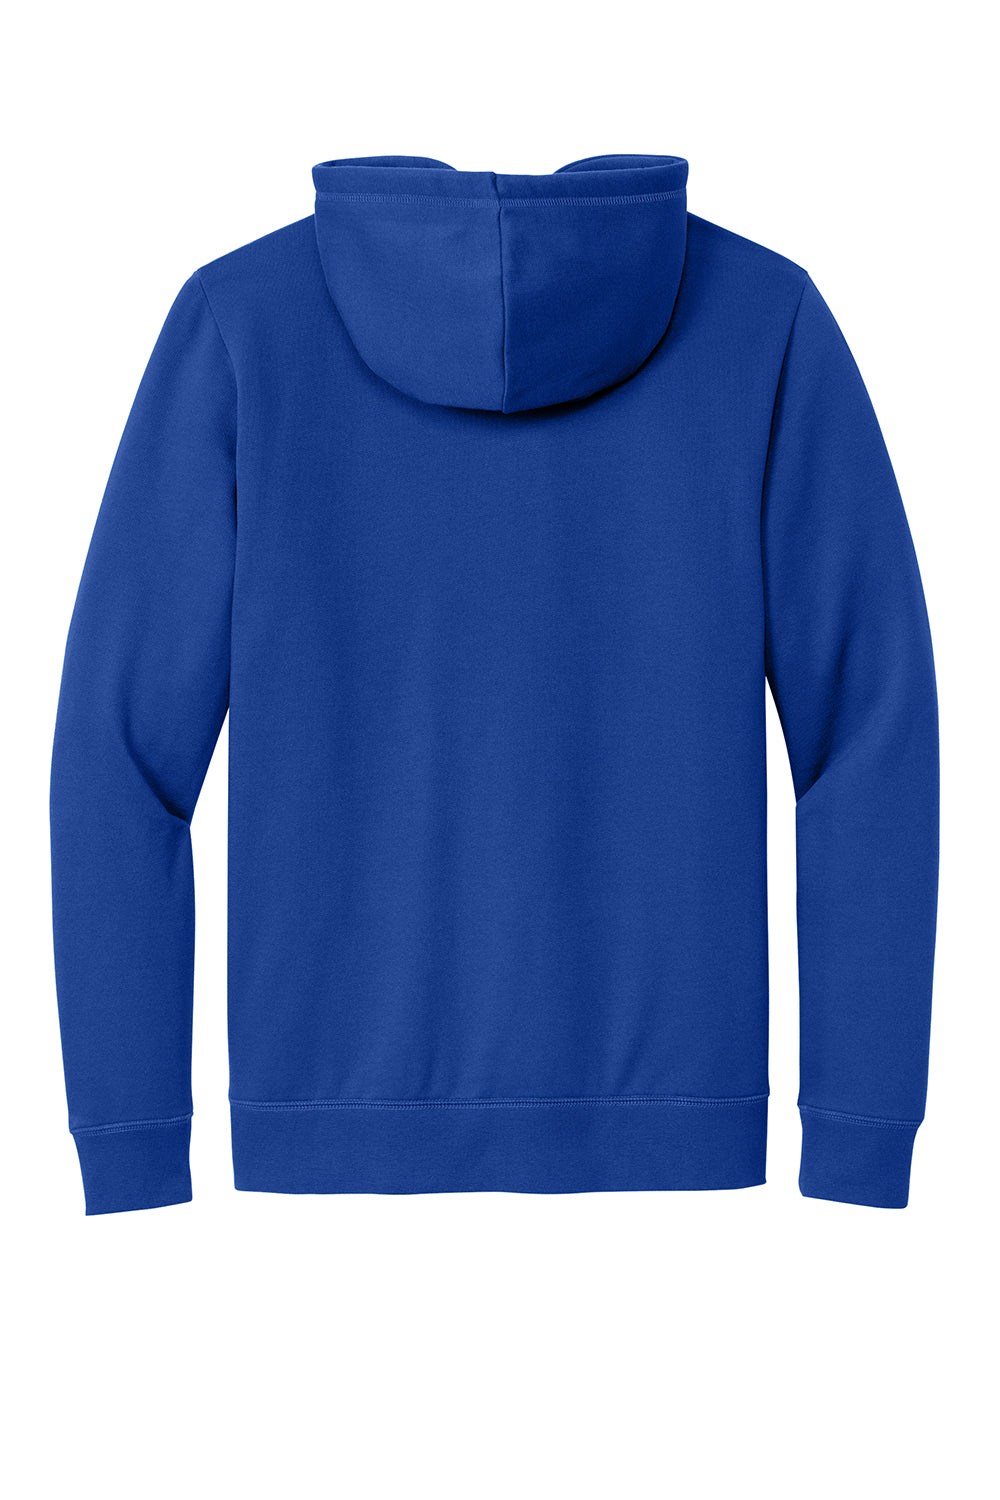 New Era NEA550 Mens Comeback Fleece Hooded Sweatshirt Hoodie Royal Blue Flat Back